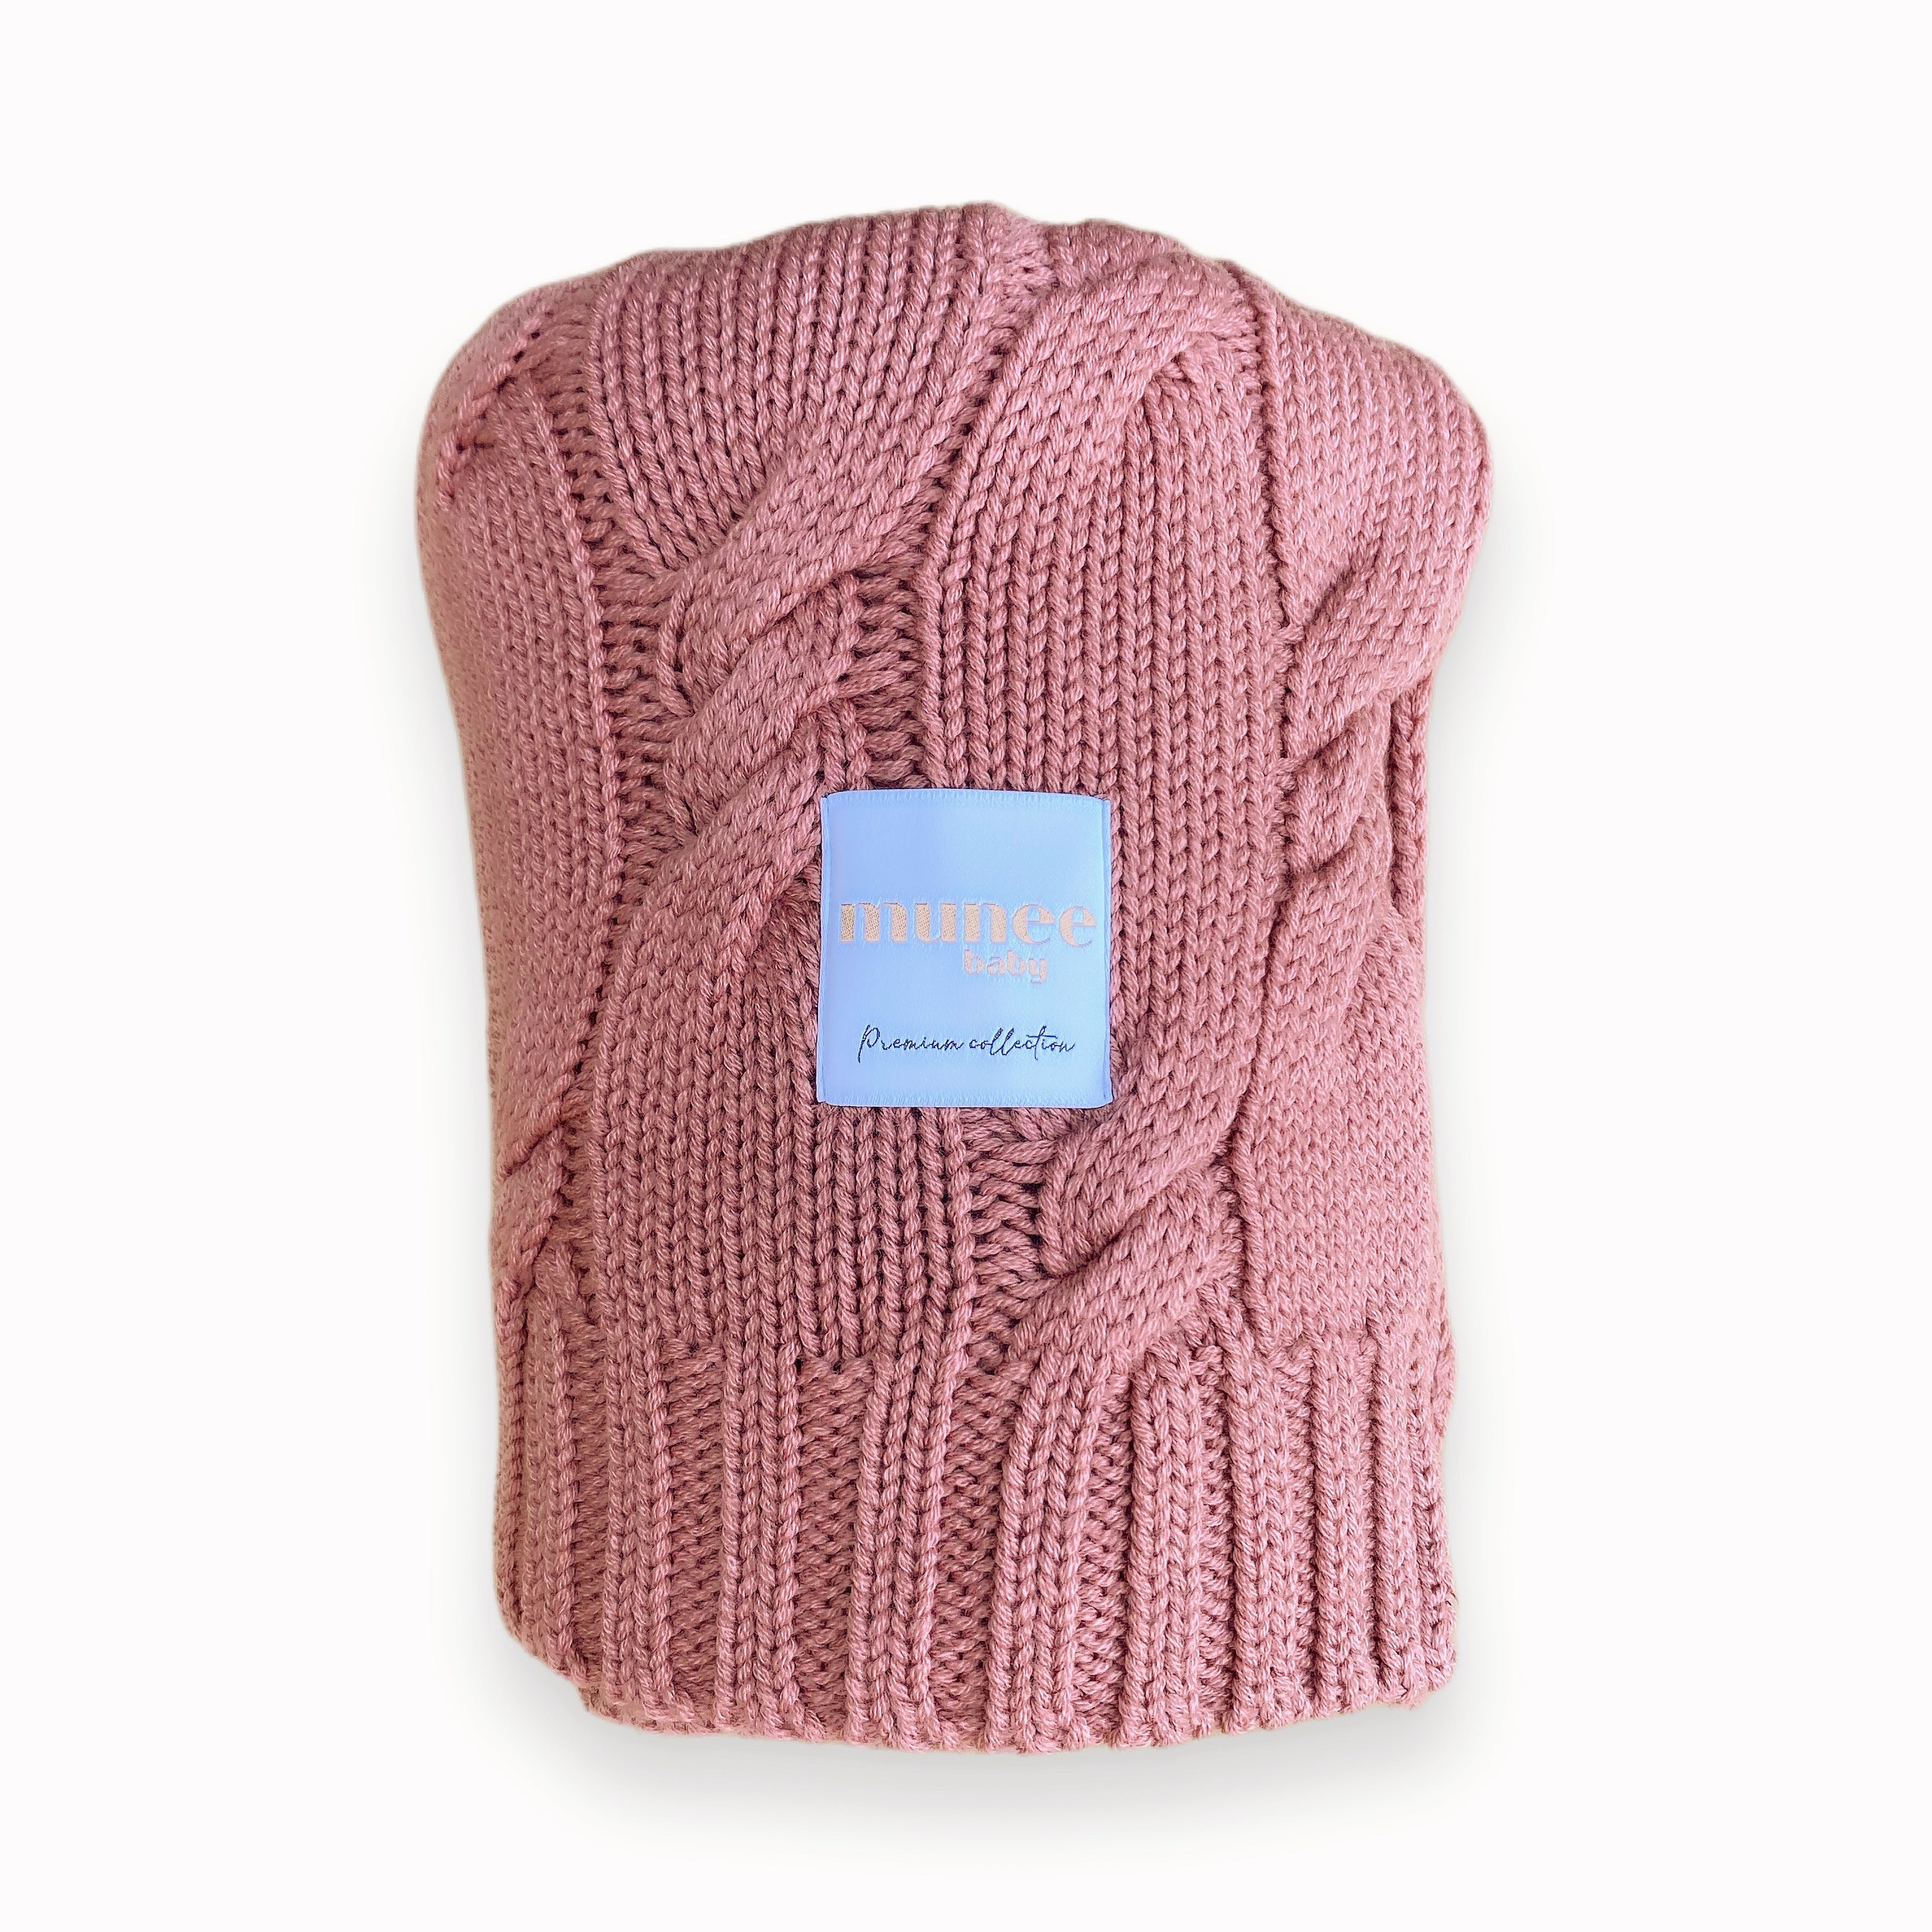 Coperta in cashmere e lana merinos colori moda, pesante per l'inverno